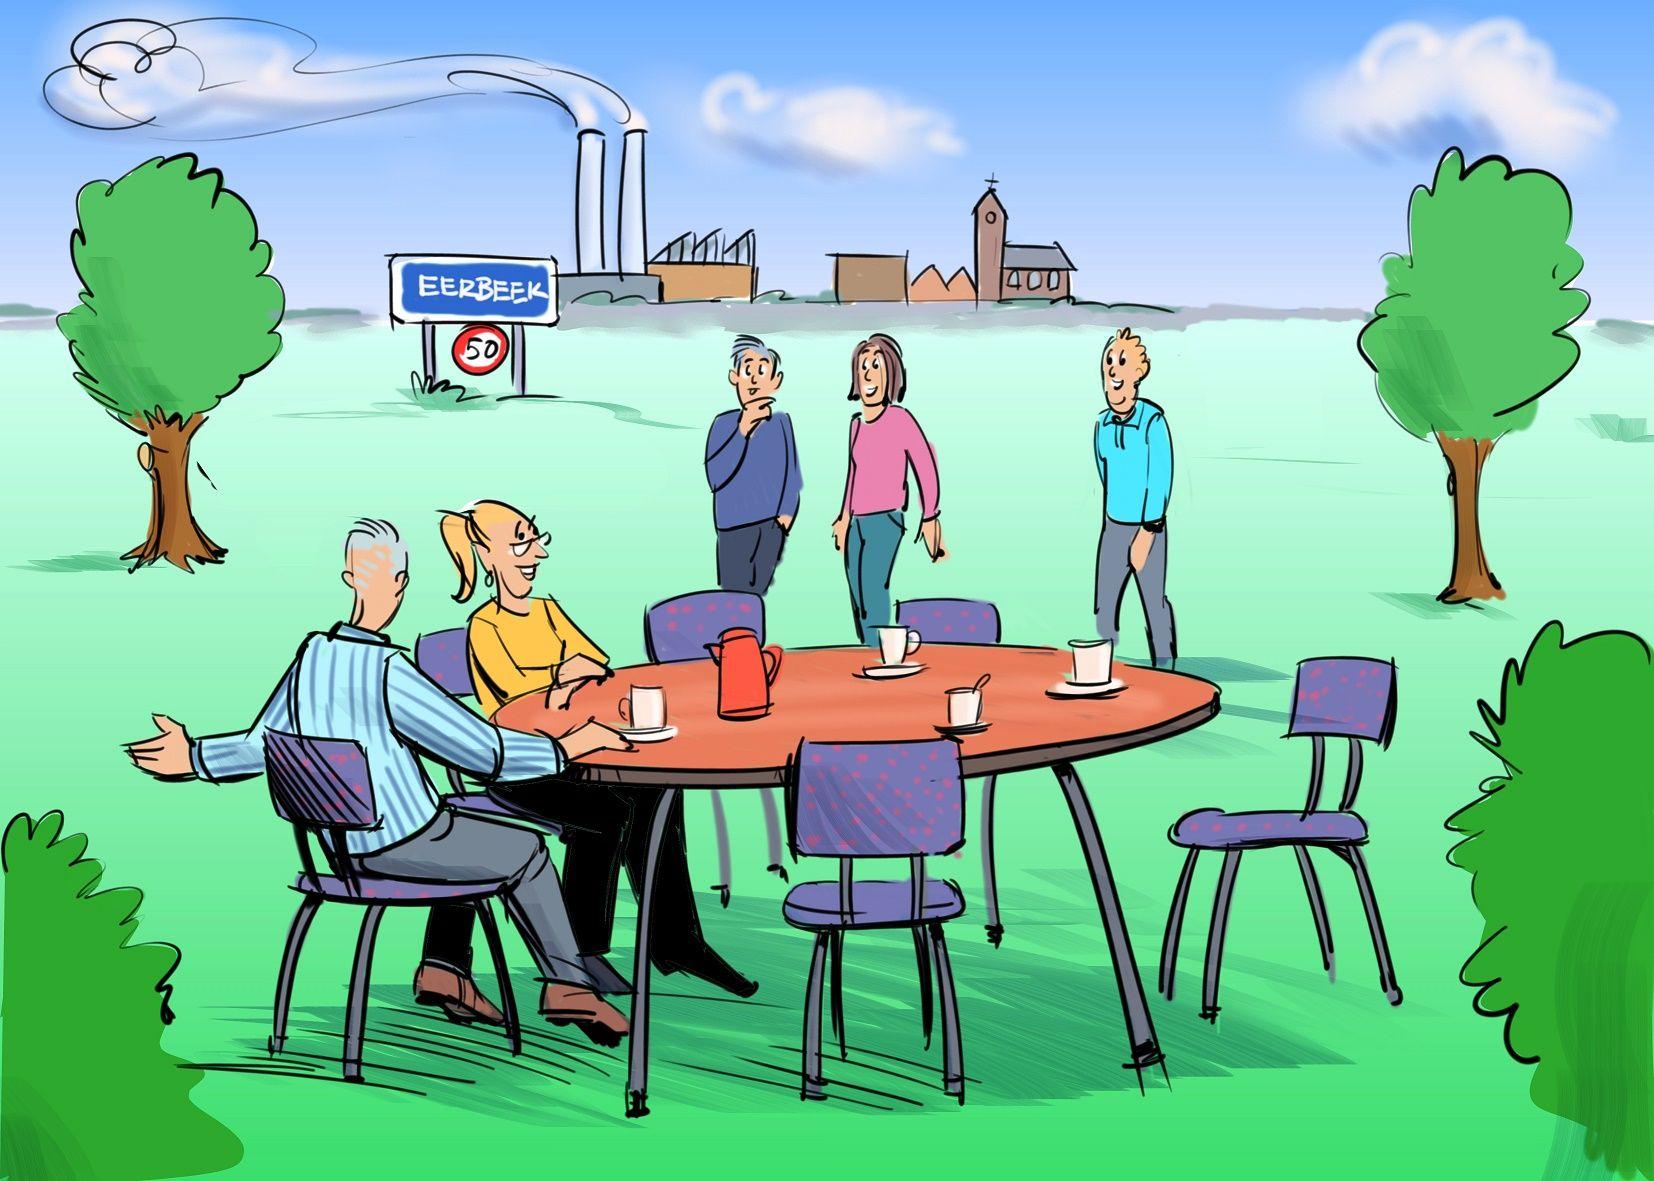 Afbeelding getekende figuren rondom een tafel in het projectgebied